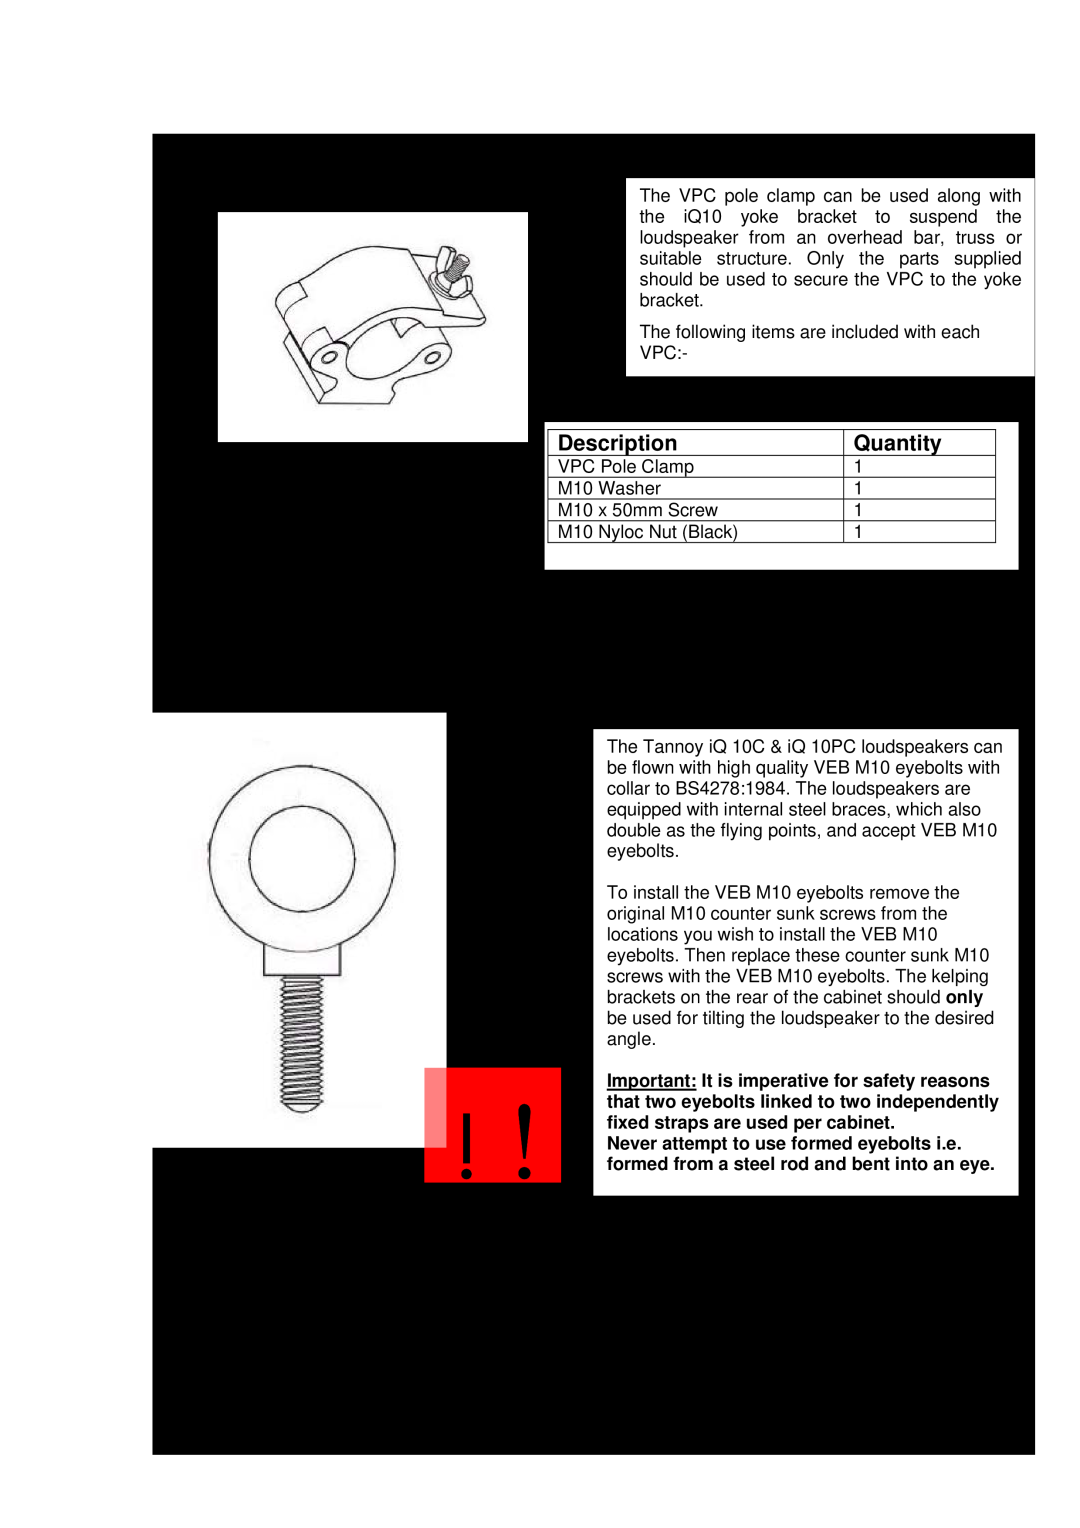 3Com iQ 10 Description, Quantity, SECUR – ET VPC Pole Clamp, SECUR ET – VEB Eyebolt, fixed straps are used per cabinet 